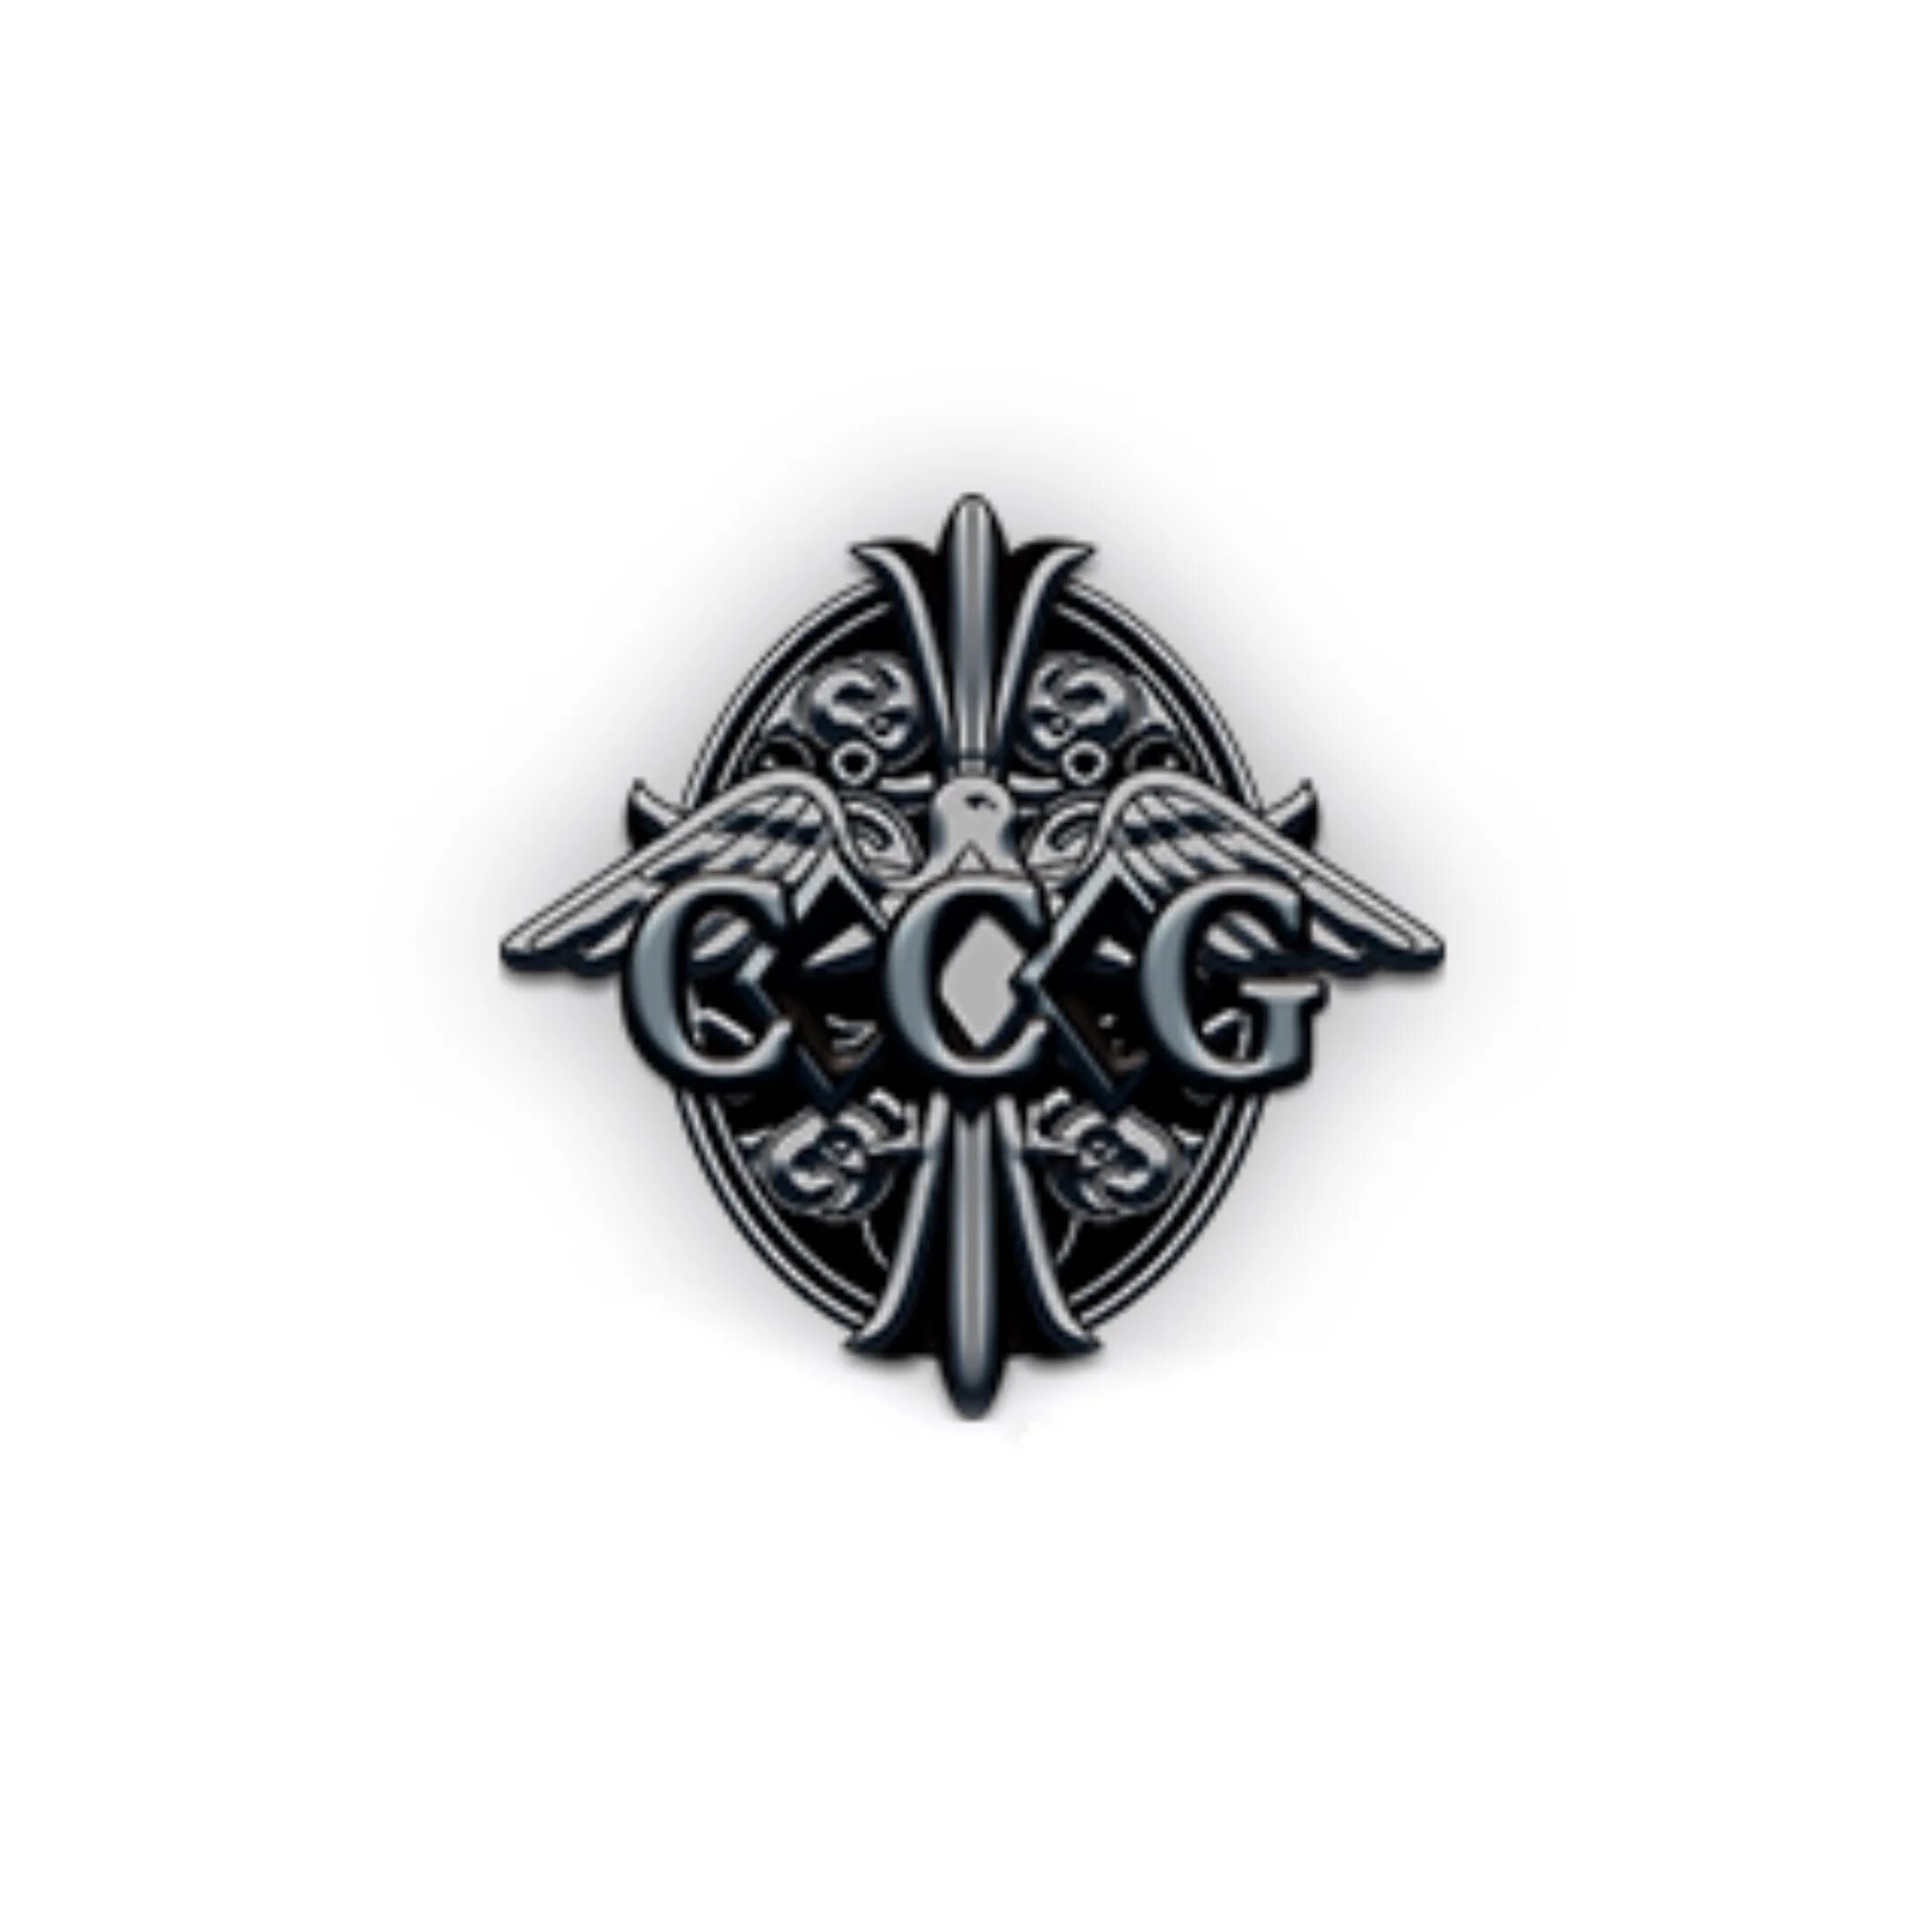 Ccg токийский. CCG Токийский гуль знак. Эмблема CCG. ССГ гуль. Логотип CCG Токийский гуль.